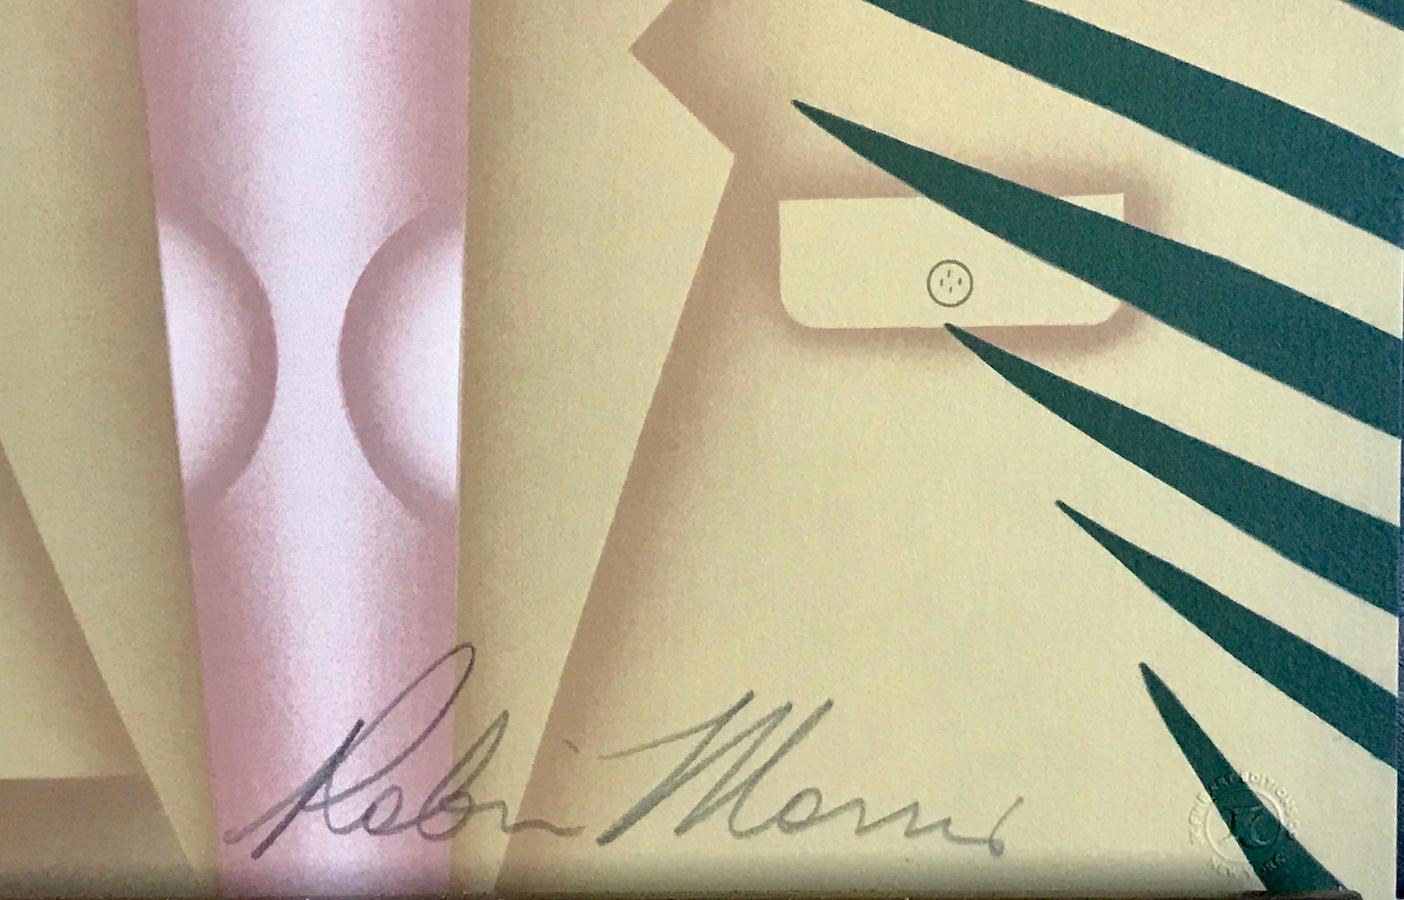 THE EXPEDITION de l'artiste Robin Morris, est une lithographie originale en édition limitée (pas une reproduction de photo ou une impression numérique) imprimée en 15 couleurs en utilisant des techniques de lithographie à la main avec une